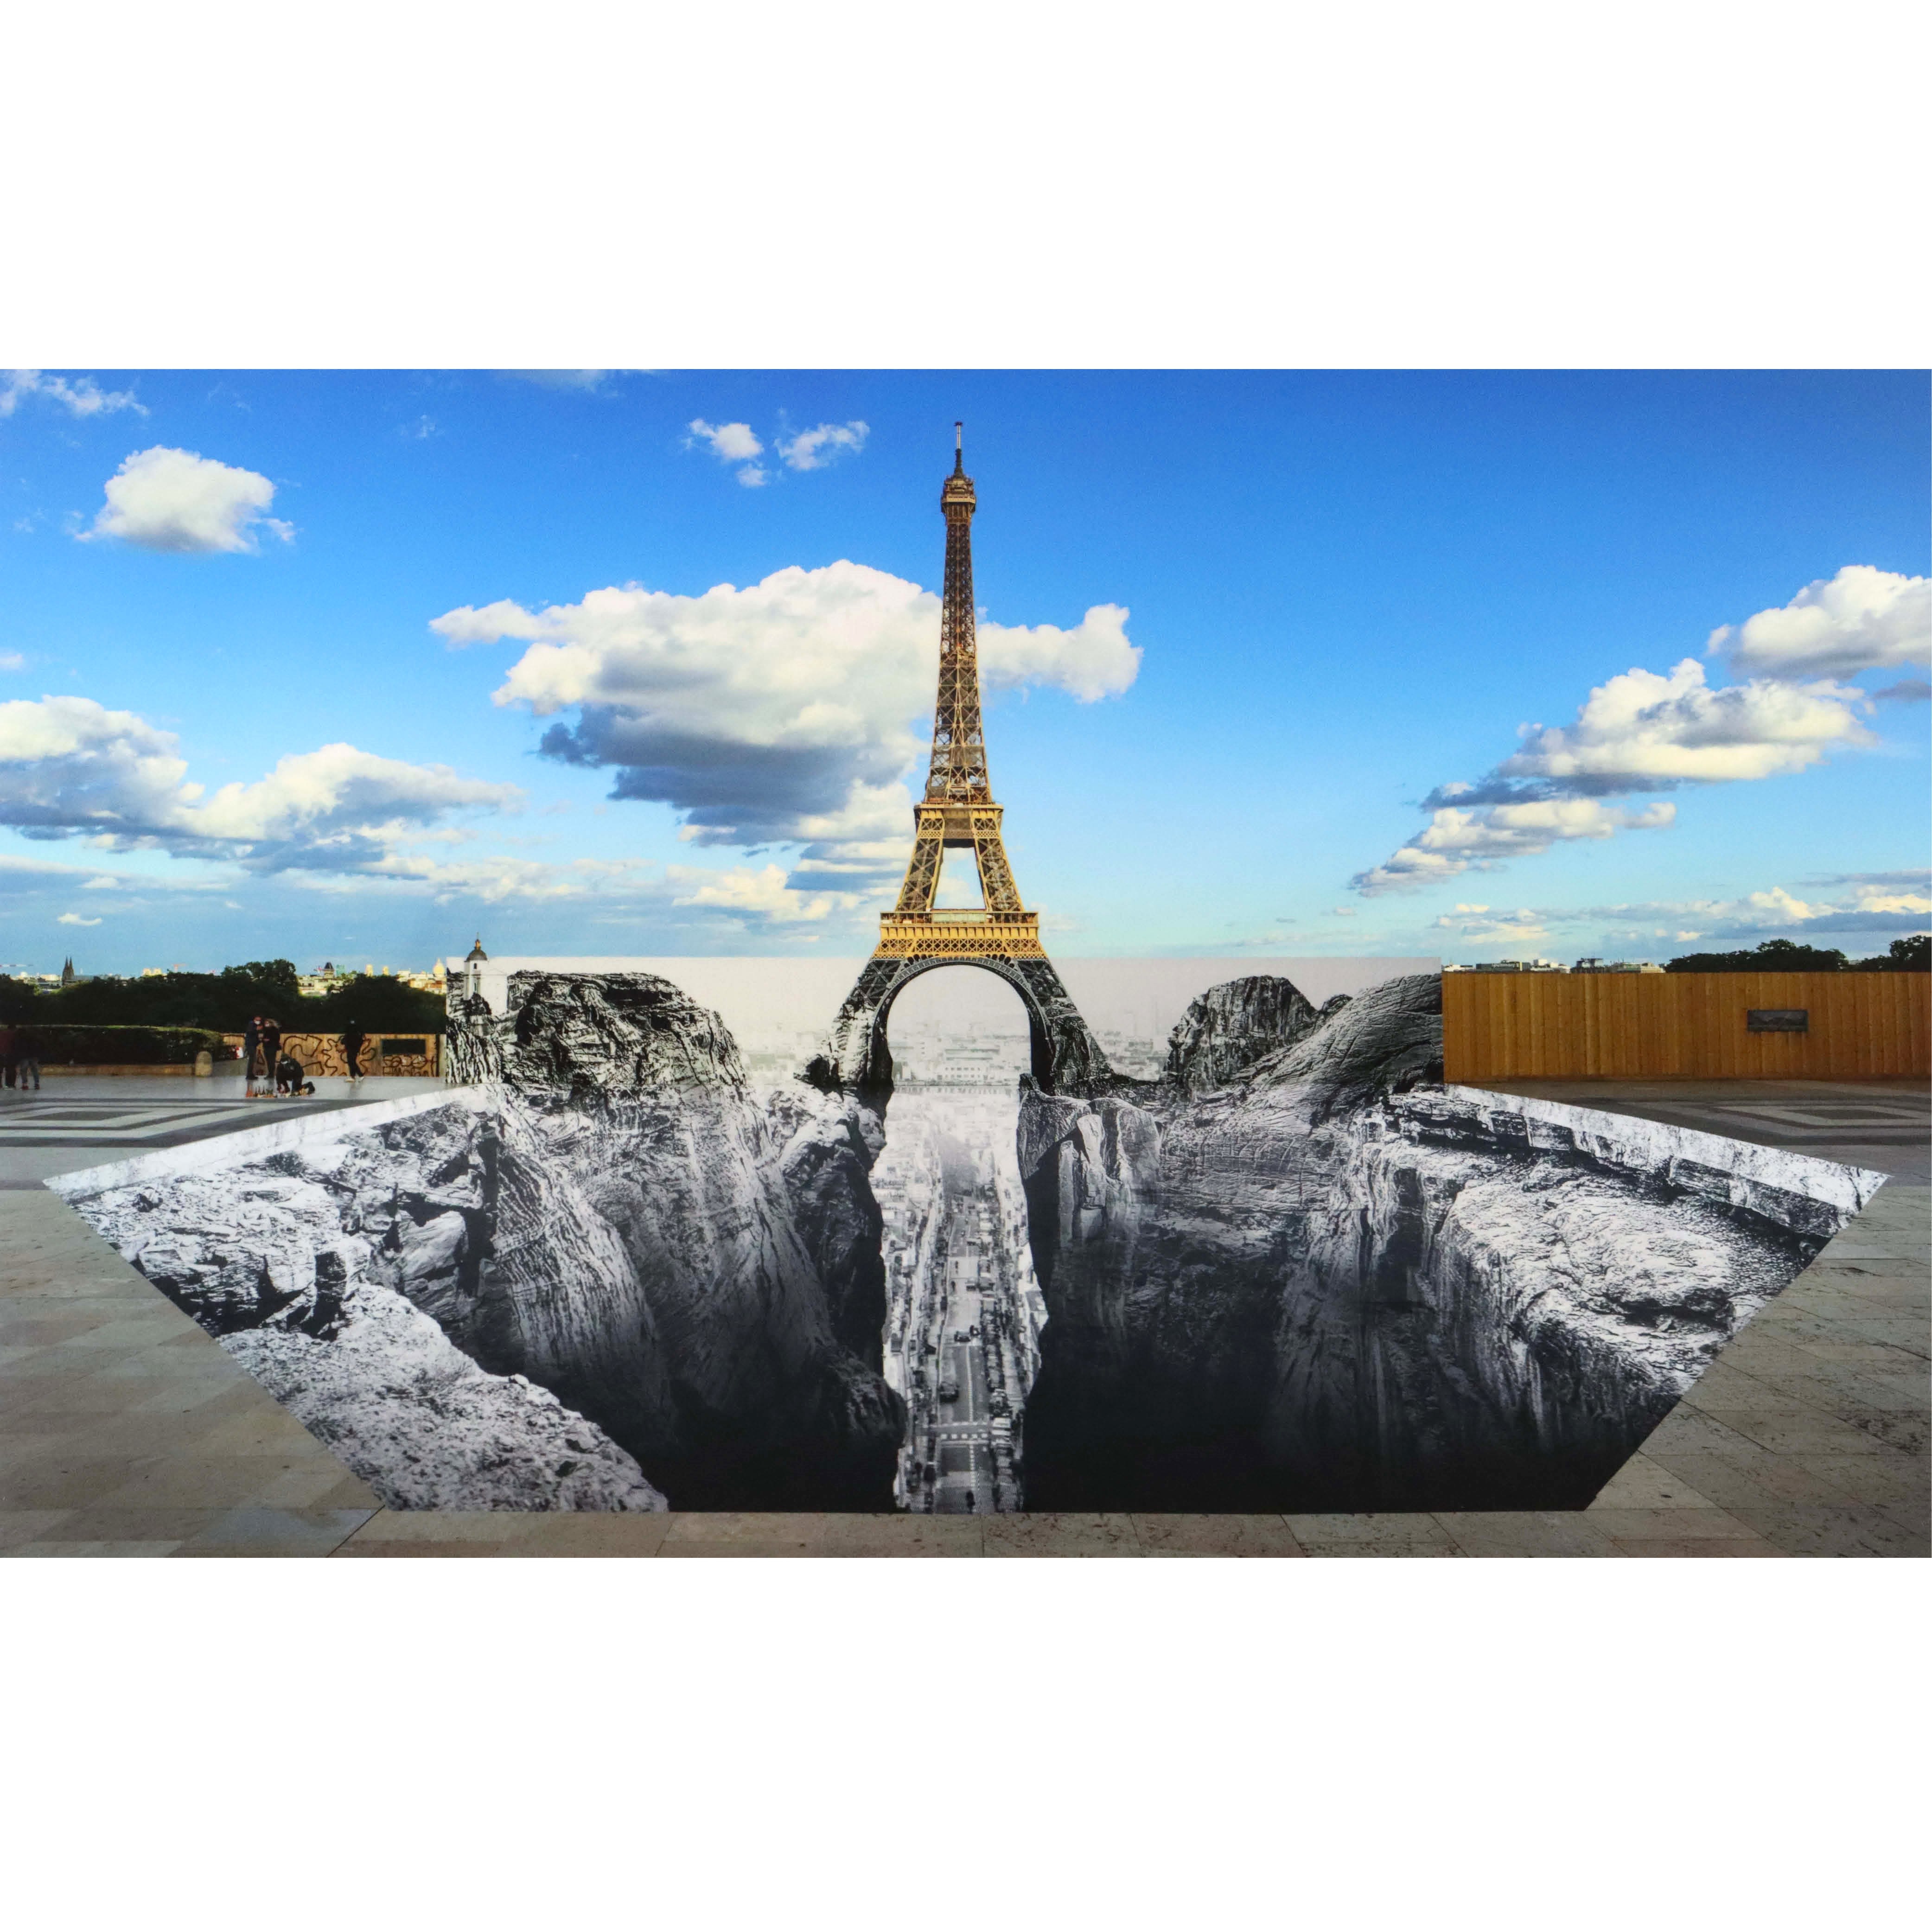 Trompe l'oeil, Les Falaises du Trocadéro, 19 mai 2021, 19h57, Paris, France, 2021-JR-1